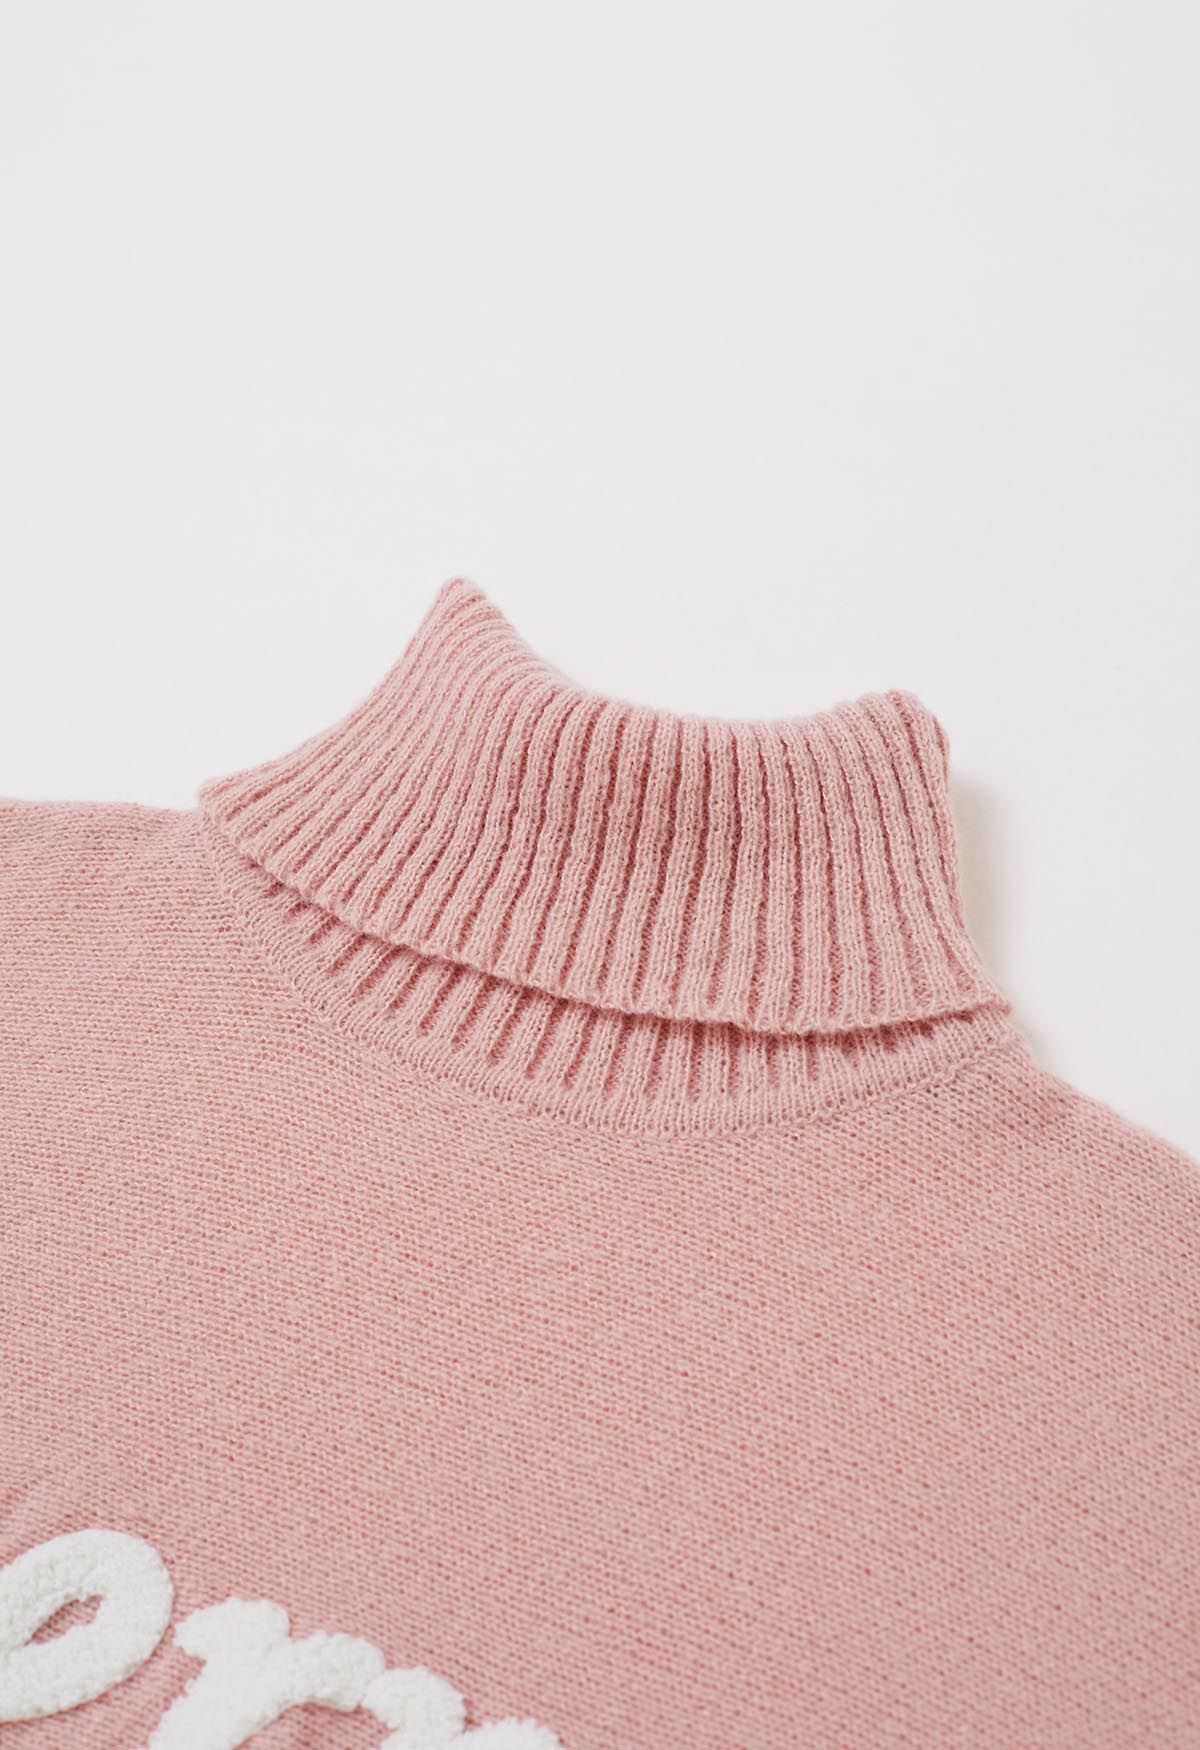 Merry - Pull en tricot à col roulé et manches chauve-souris en rose